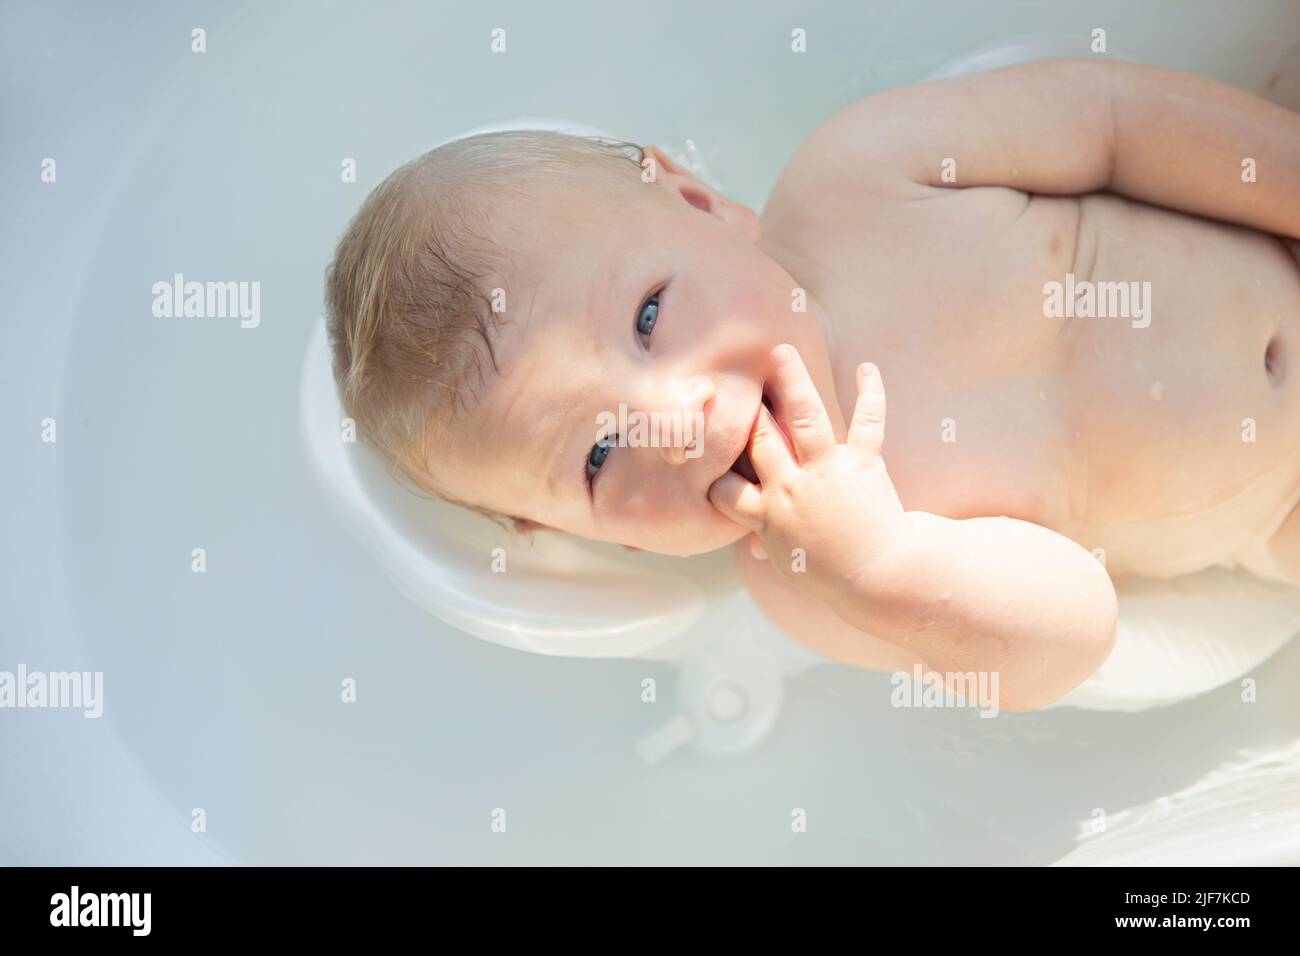 mignon bébé à yeux bleus de 6 mois baigné dans un bain de bébé Banque D'Images